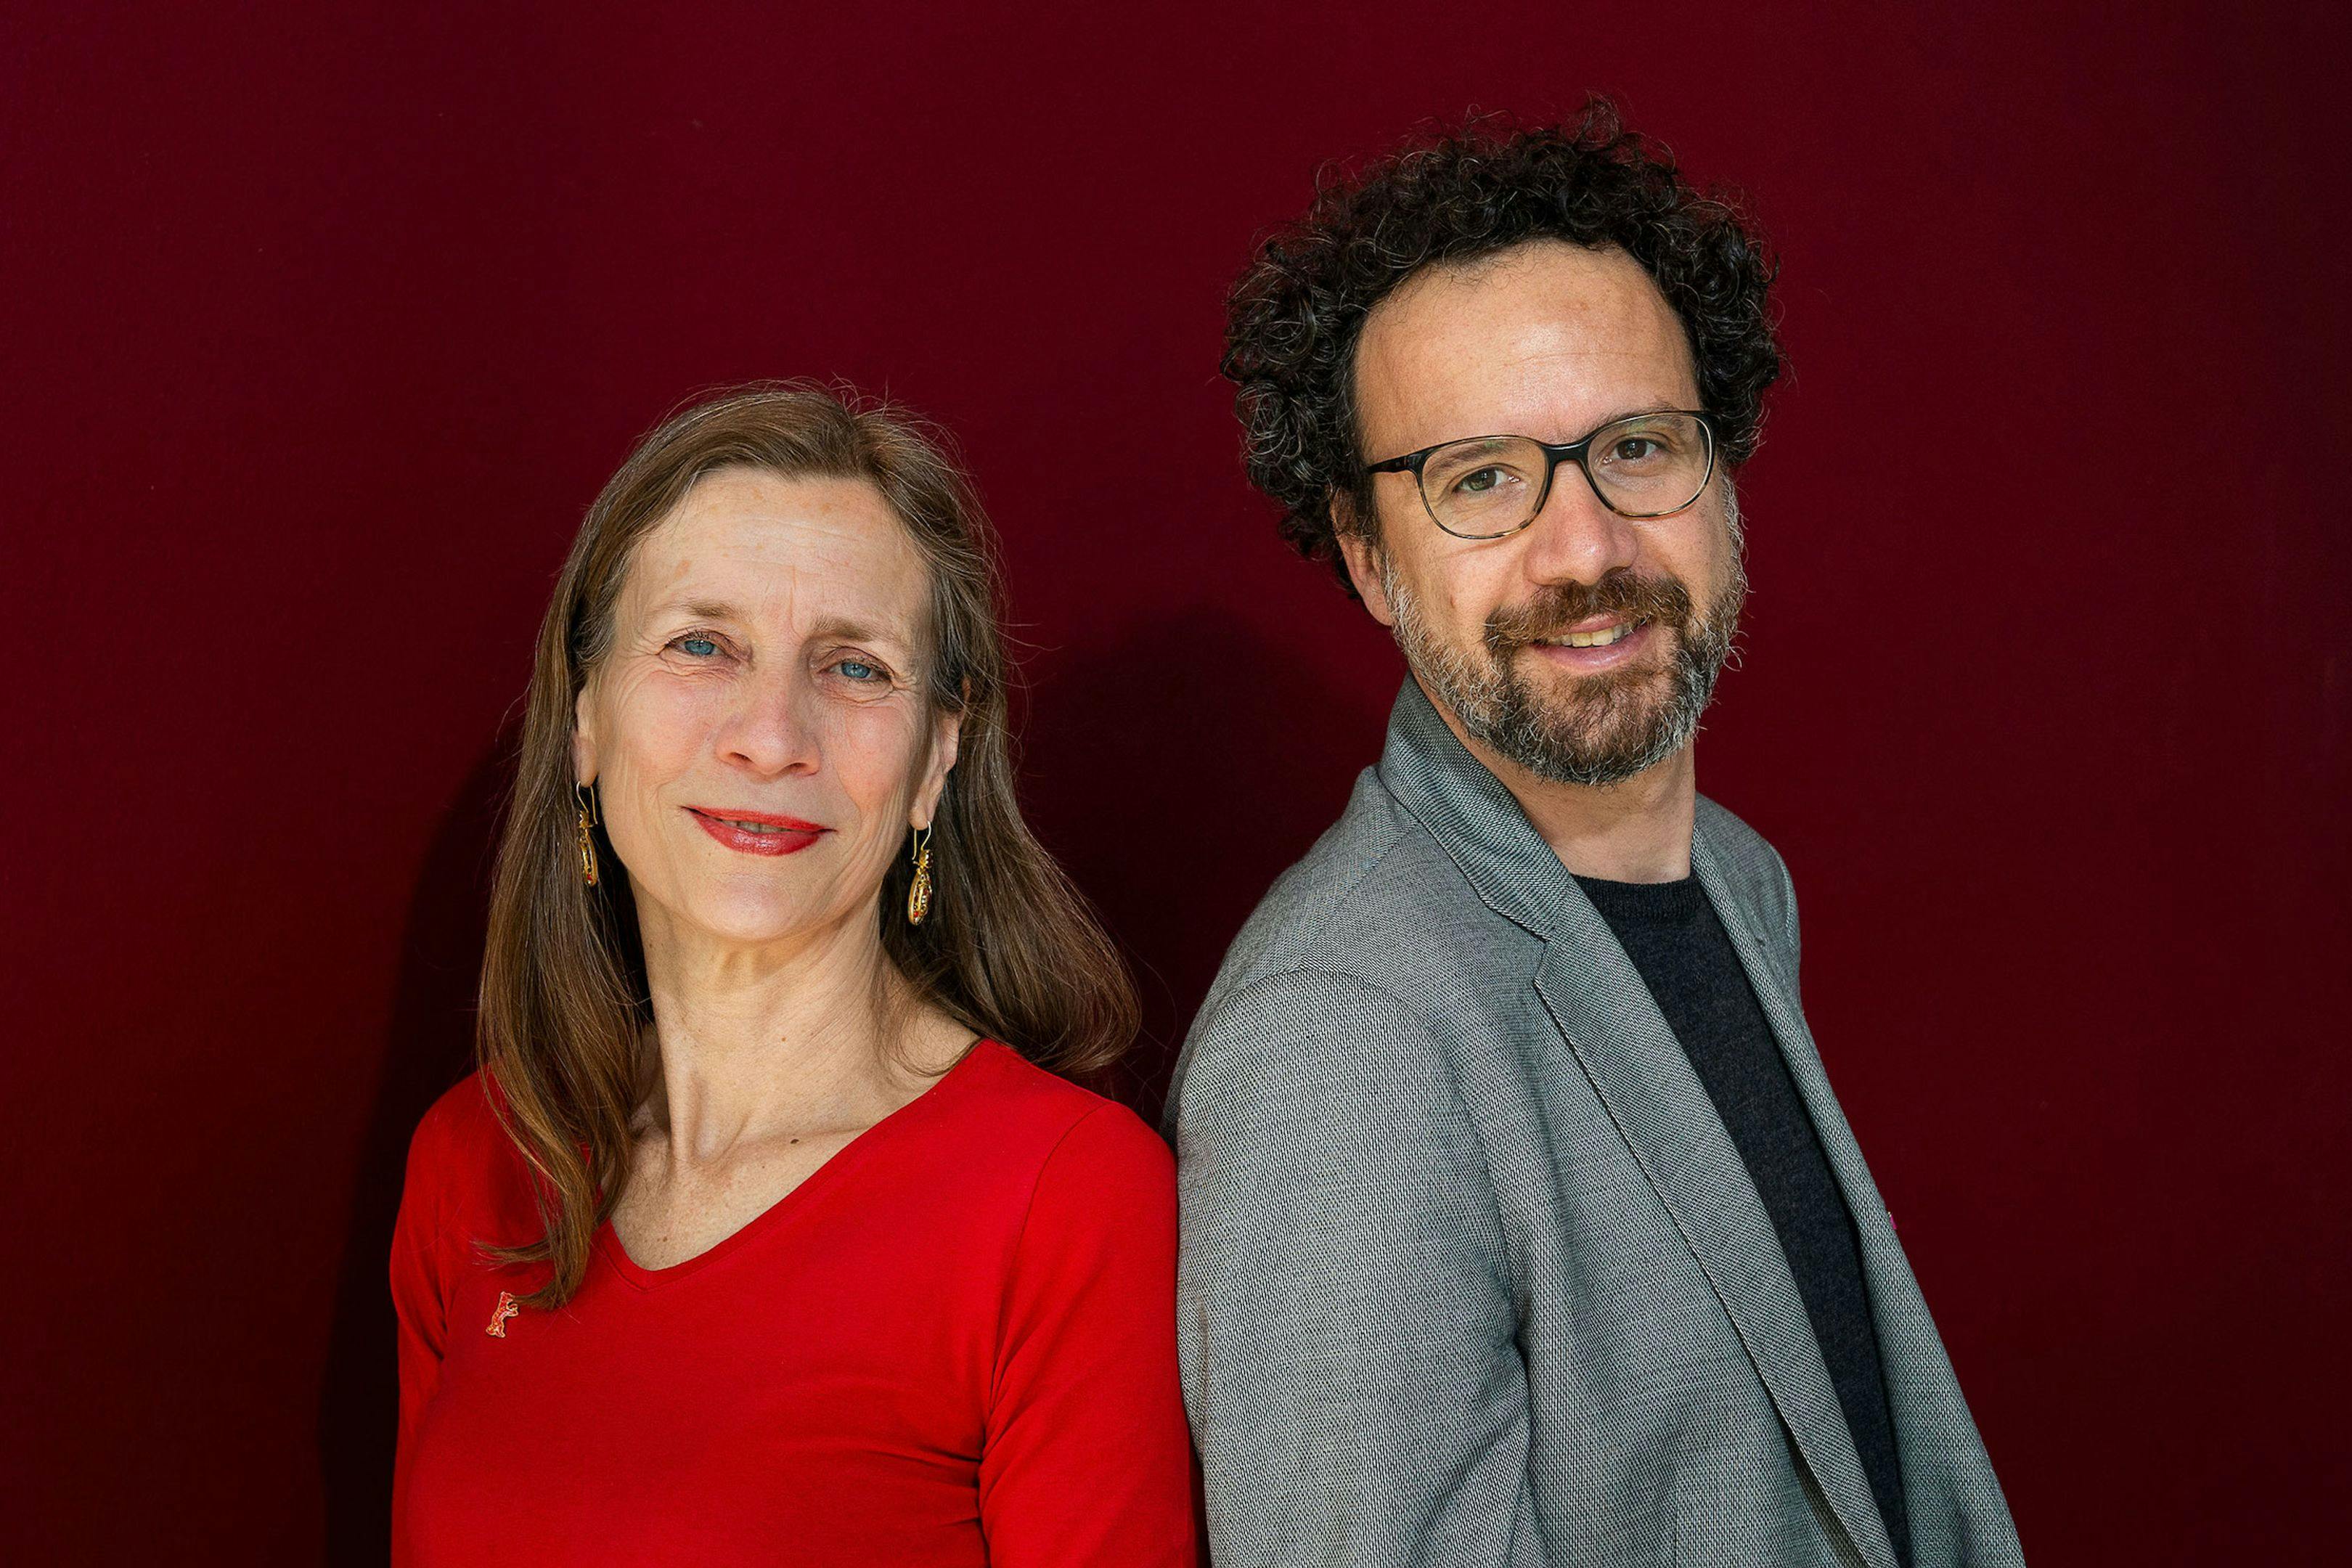 Mariette Rissenbeek y Carlo Chatrian, codirectores de la Berlinale hasta la edición de 2024